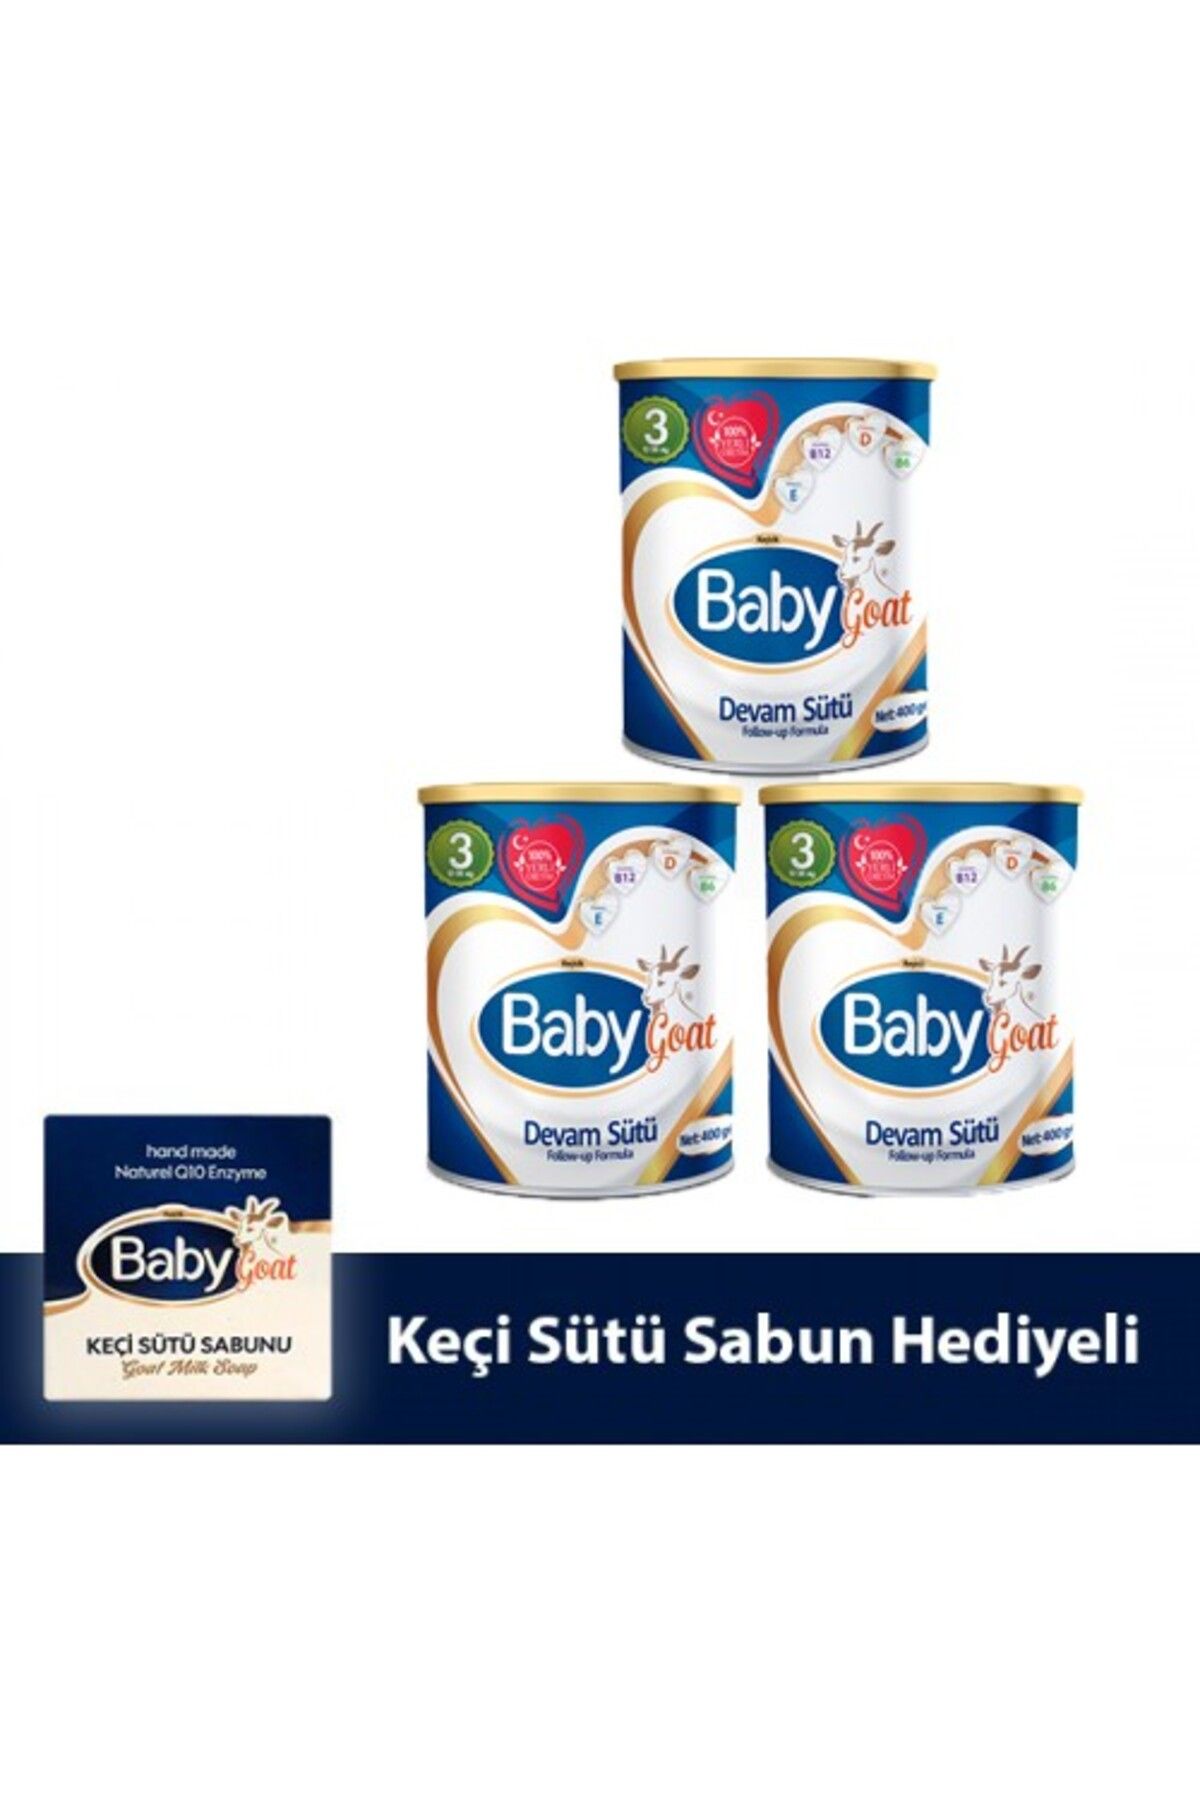 Baby Goat 3 Keçi Sütü Bazlı Devam Sütü 400 gr 3 Lü ( Sabun Hediyeli )